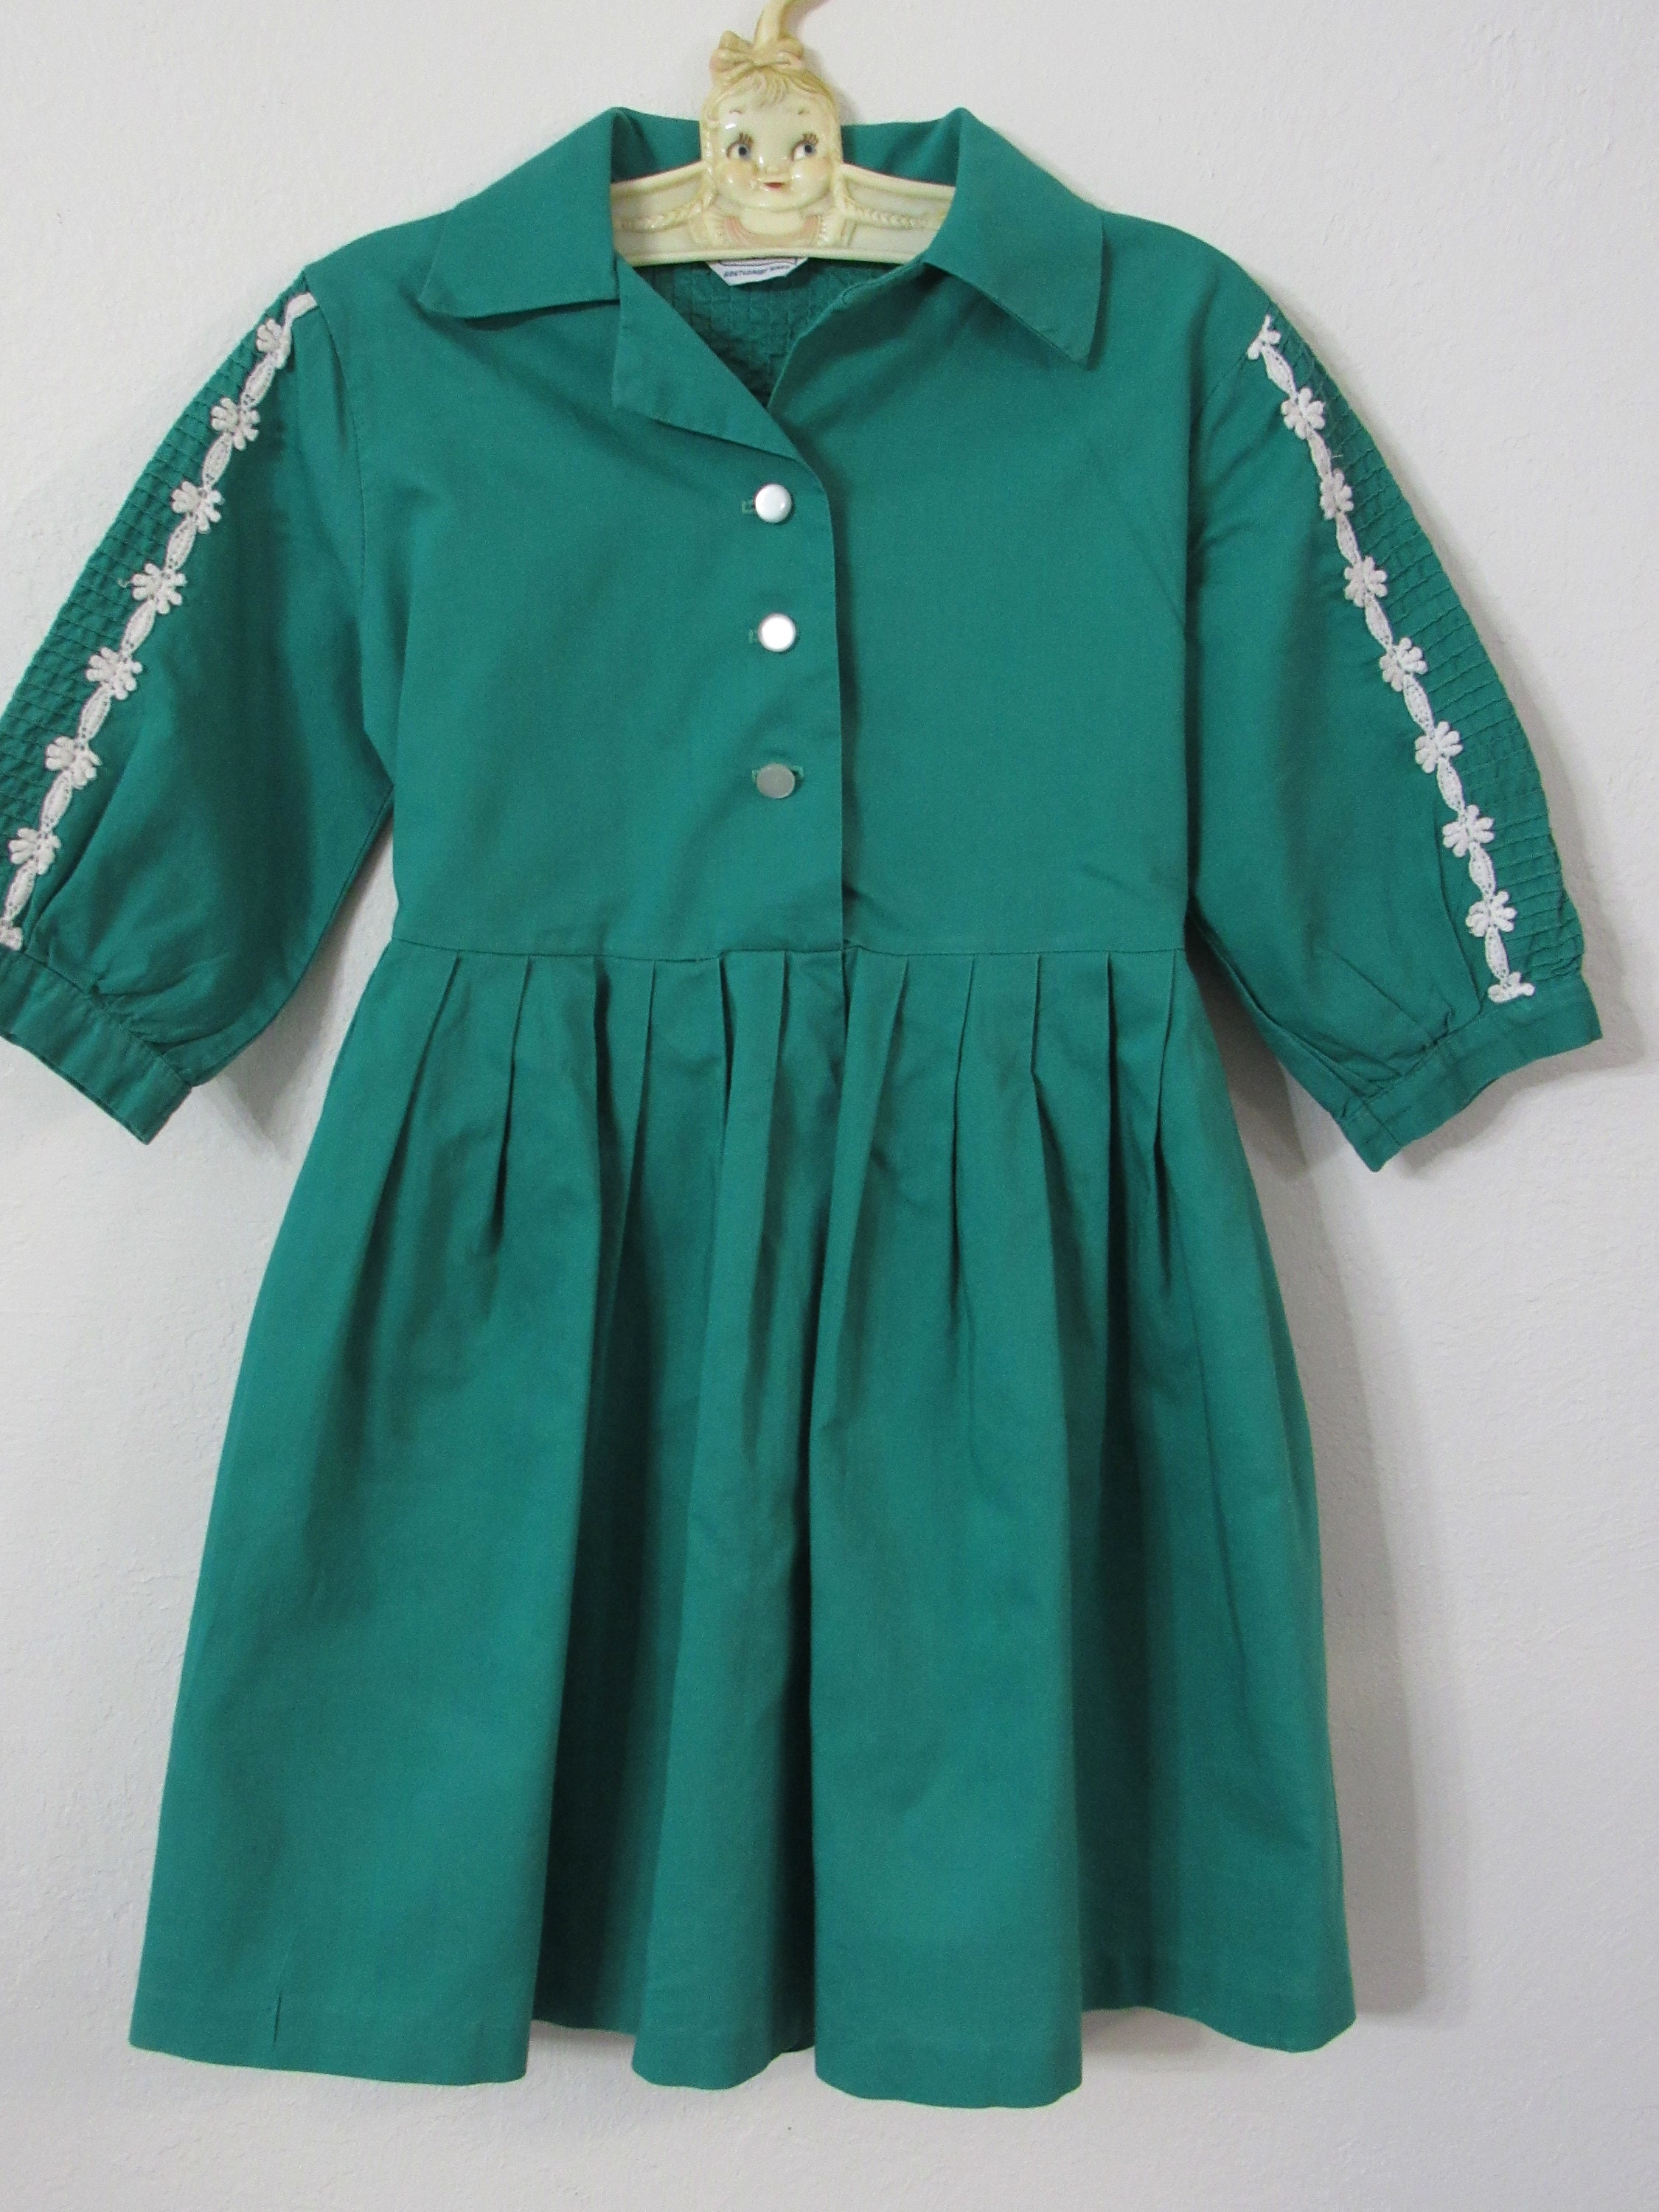 Little Girl's Dress Vintage 1950s Green Cotton Full Skirt | Etsy